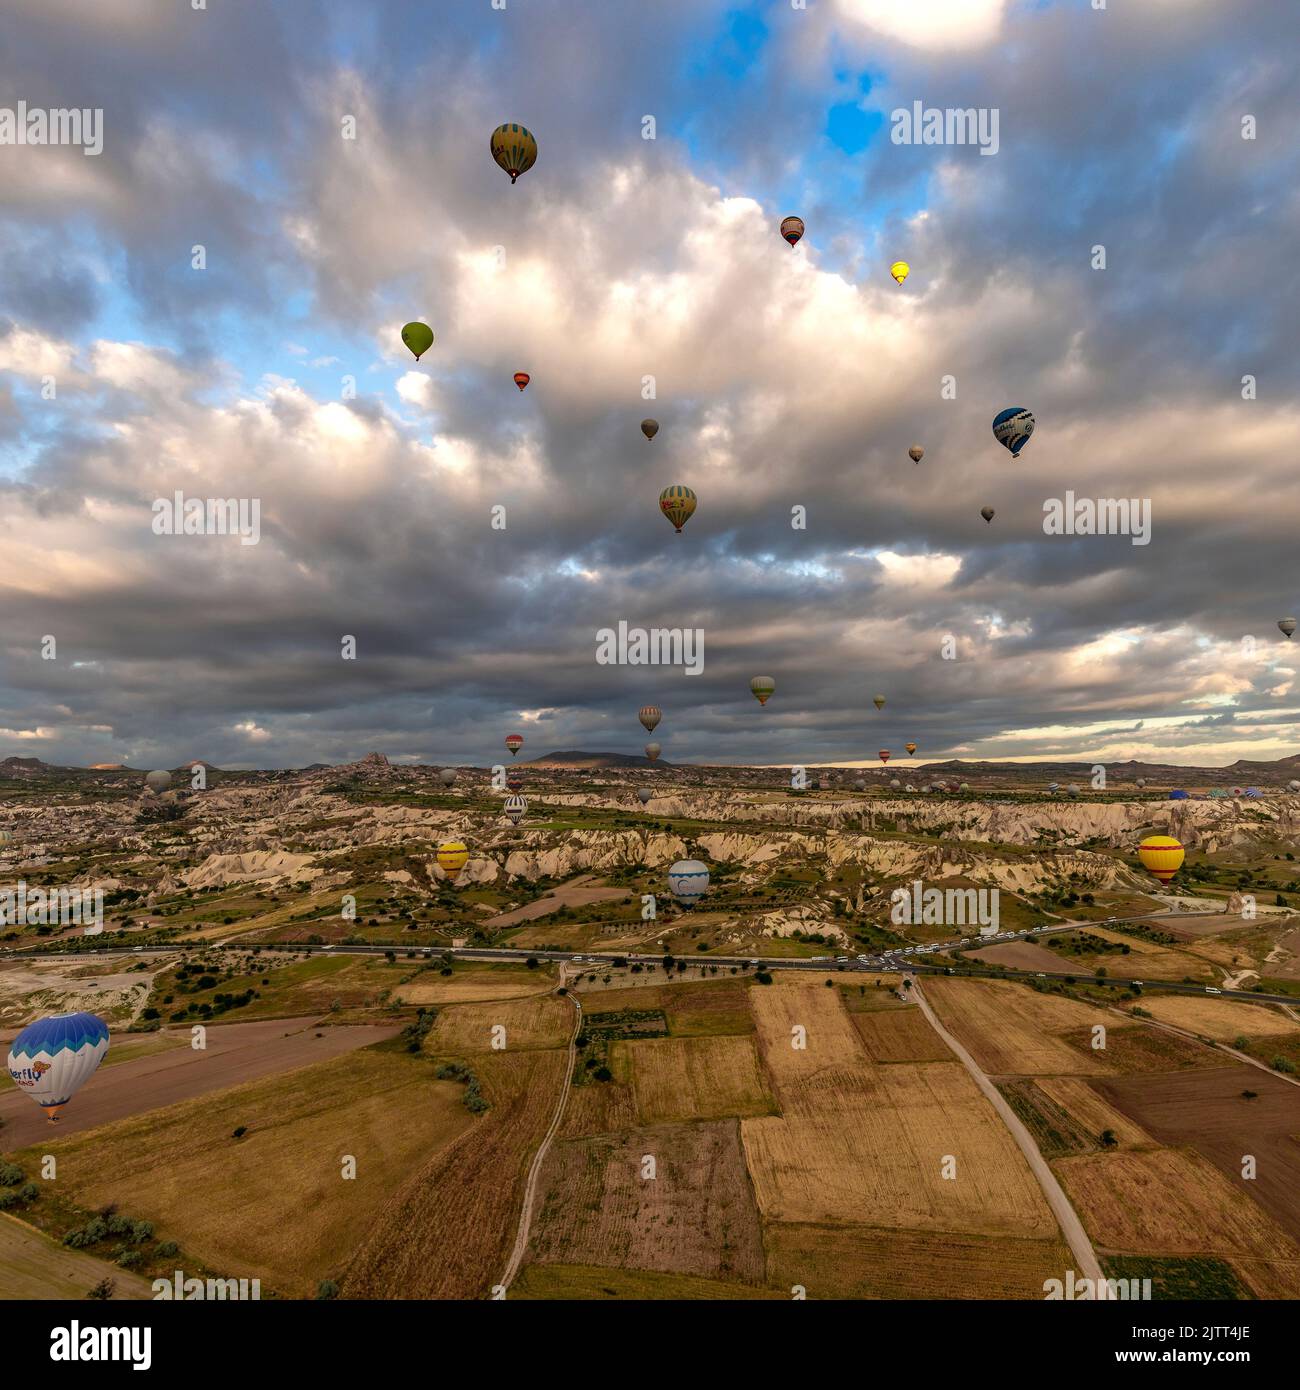 GÖREME/TURQUIE - 26 juin 2022 : des ballons d'air chaud colorés survolent au lever du soleil près de göreme, vue aérienne Banque D'Images